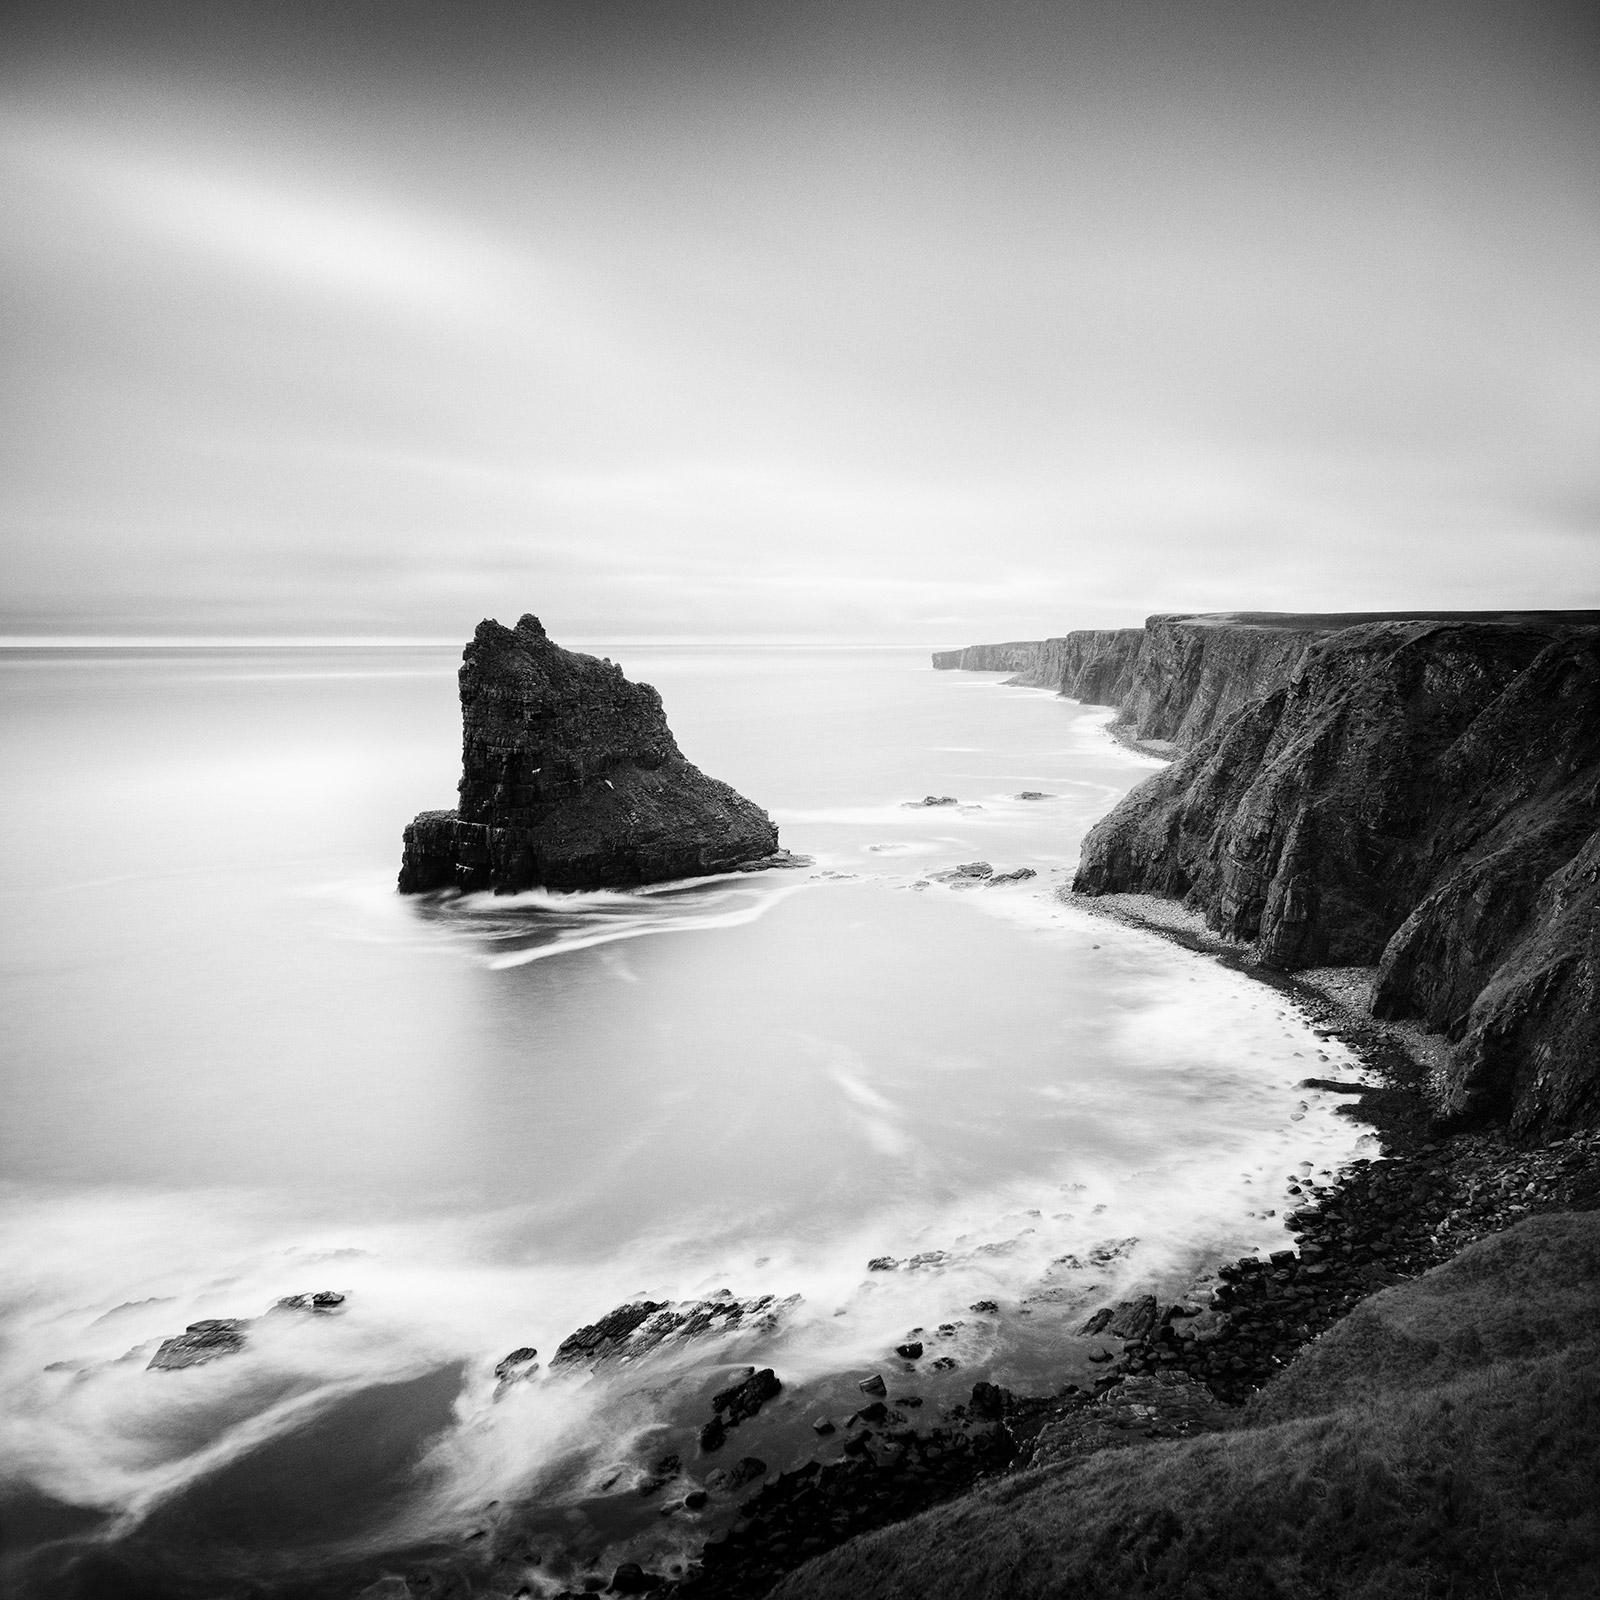 Black and White Photograph Gerald Berghammer - Moment surréaliste, falaise du littoral écossais, photographie noir et blanc, paysage